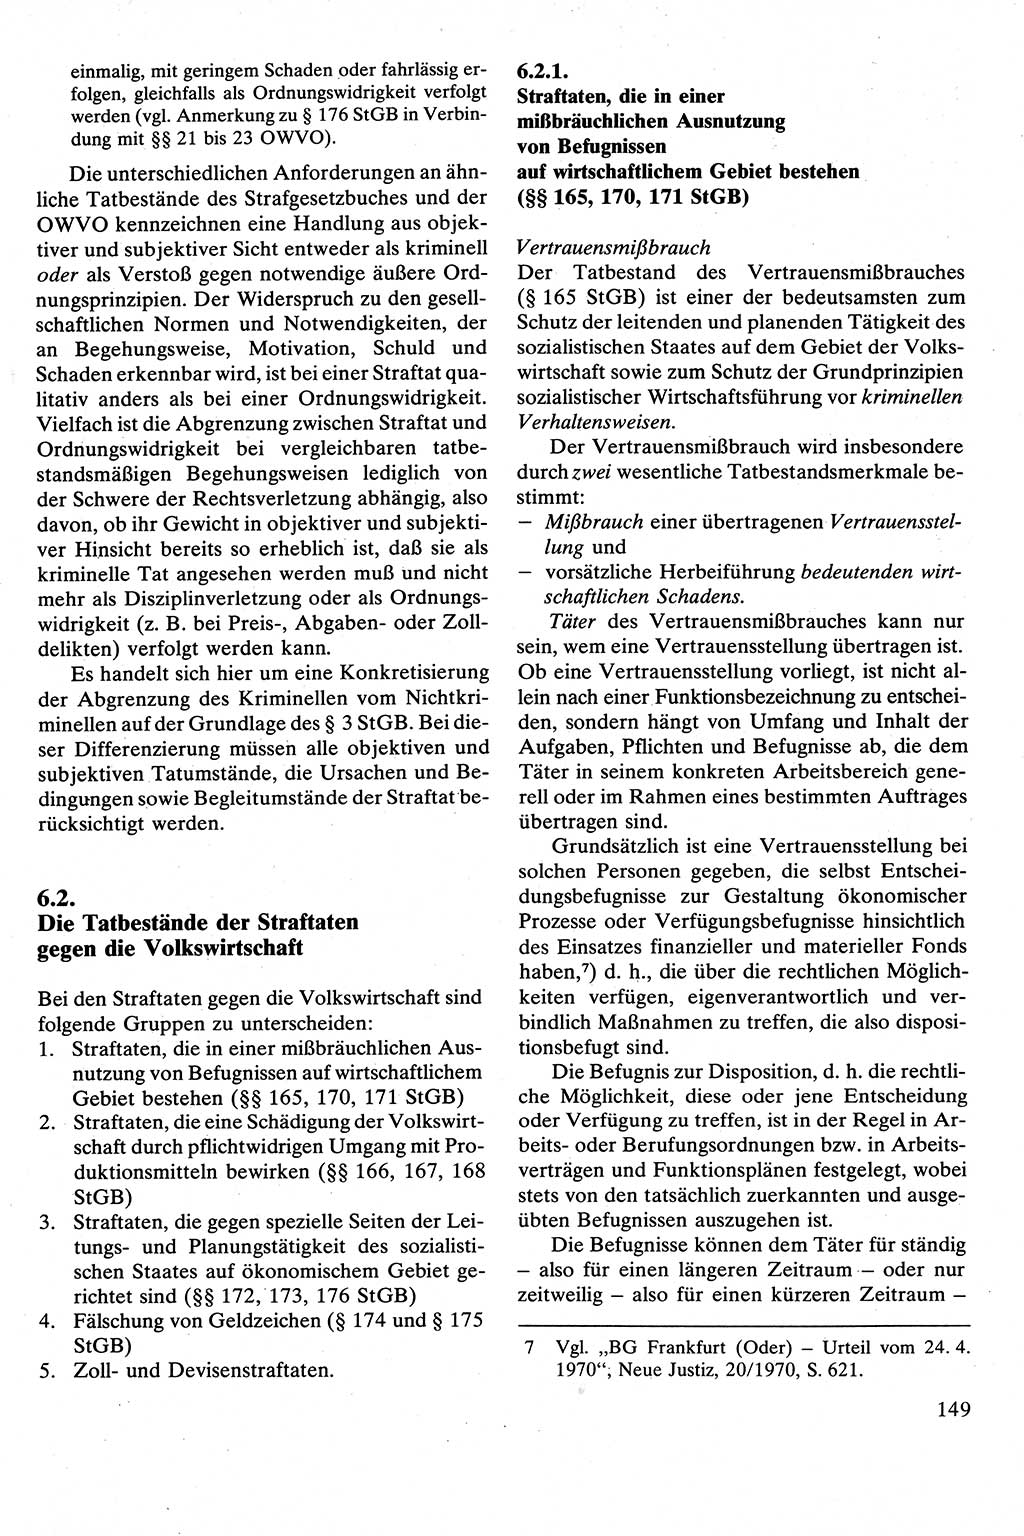 Strafrecht [Deutsche Demokratische Republik (DDR)], Besonderer Teil, Lehrbuch 1981, Seite 149 (Strafr. DDR BT Lb. 1981, S. 149)